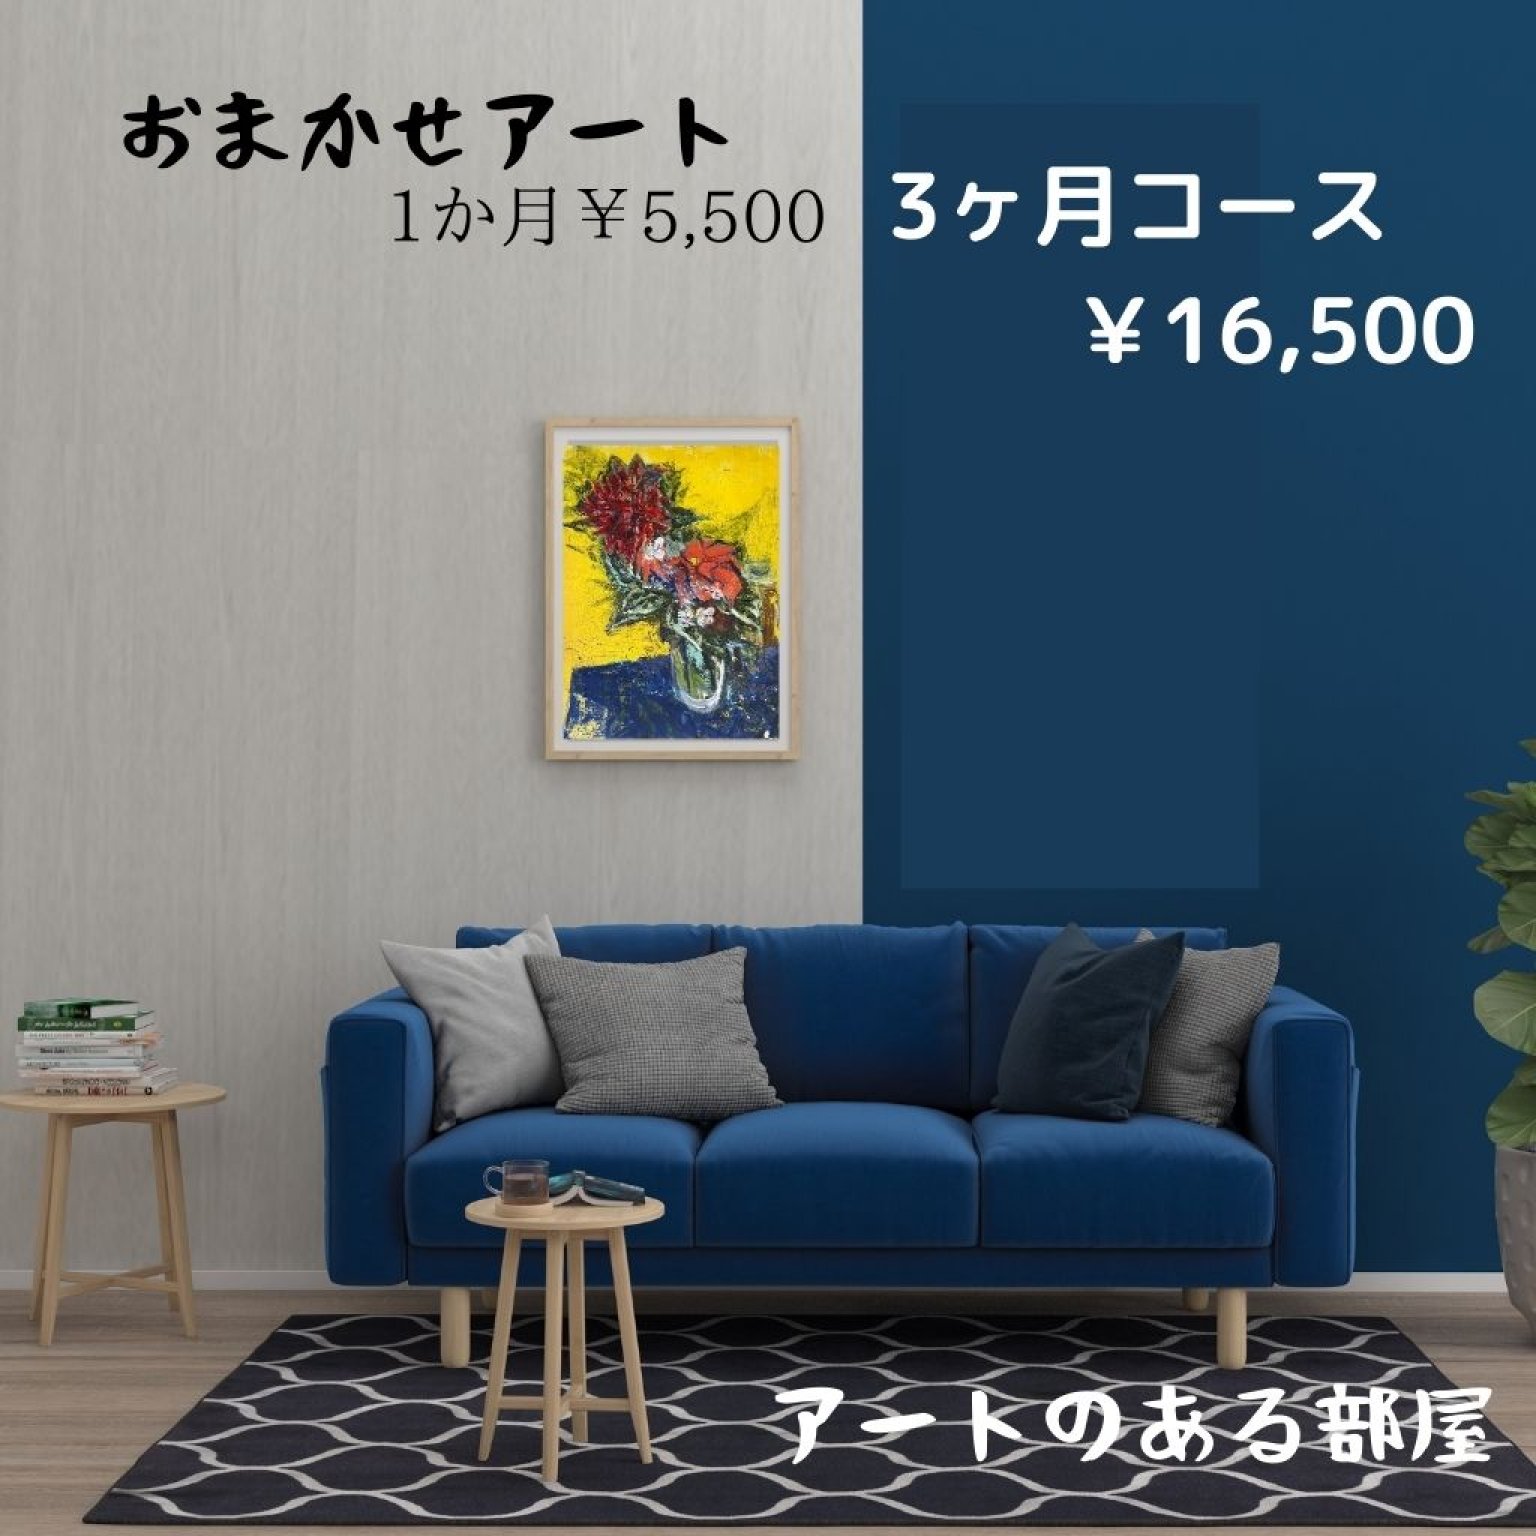 おまかせレンタルアート ¥5，500 -3ヶ月間コース